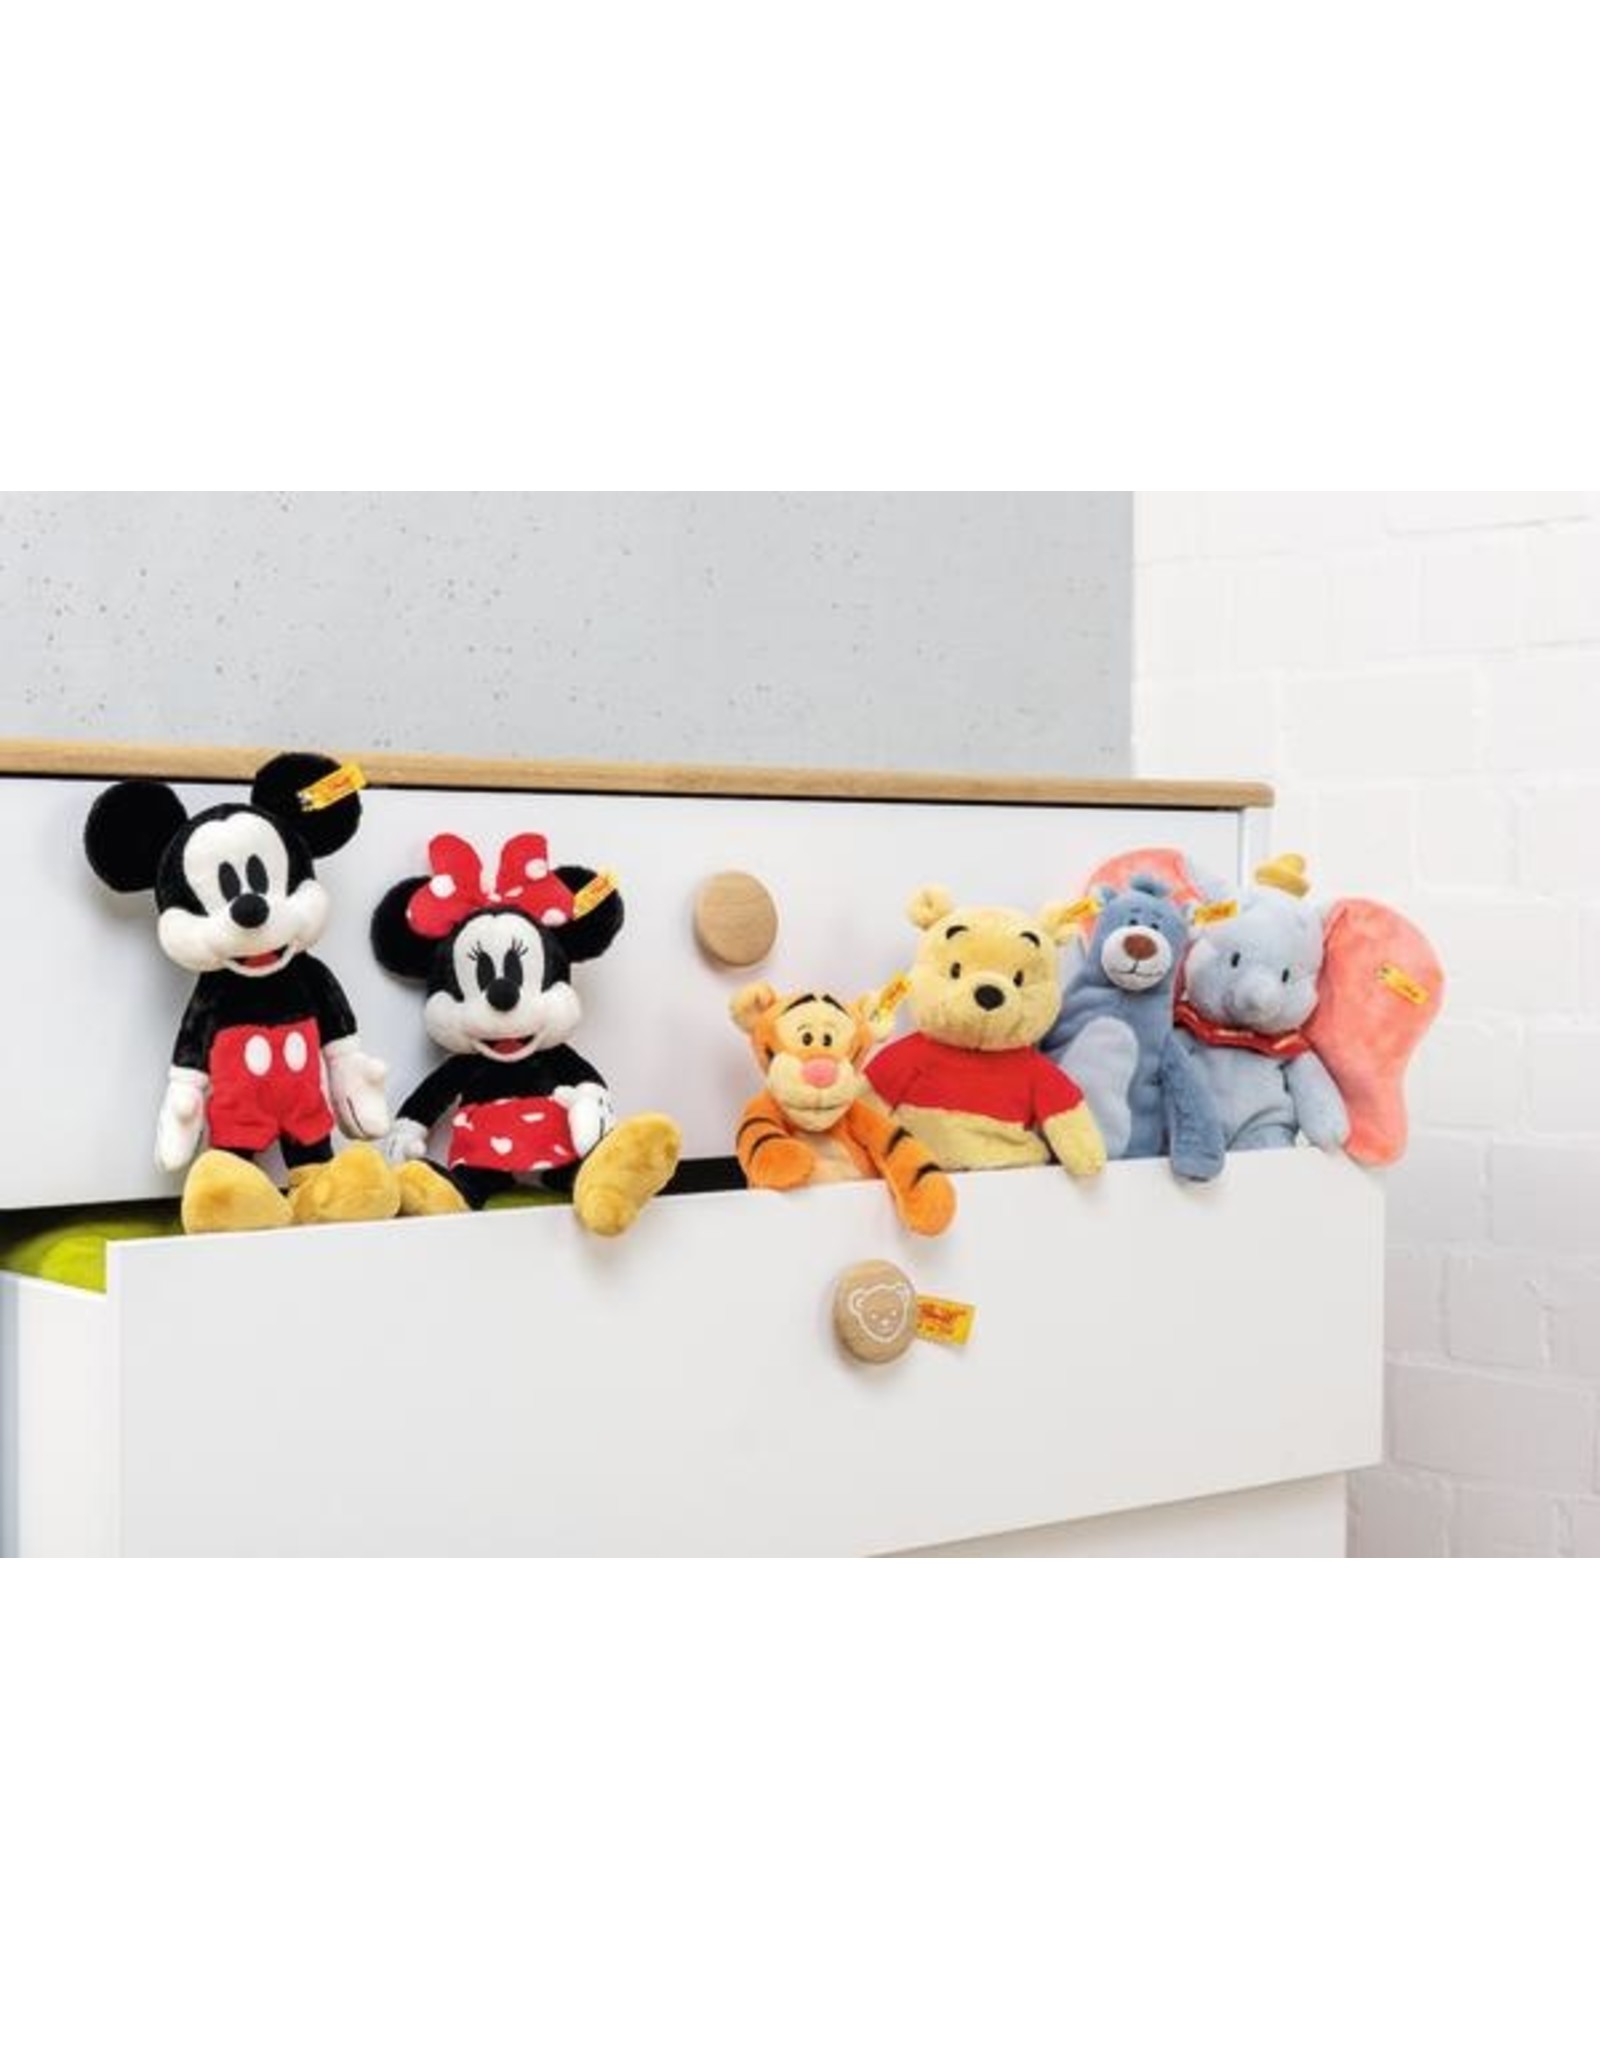 Steiff Disney Originals Minnie Mouse - Steiff 024511